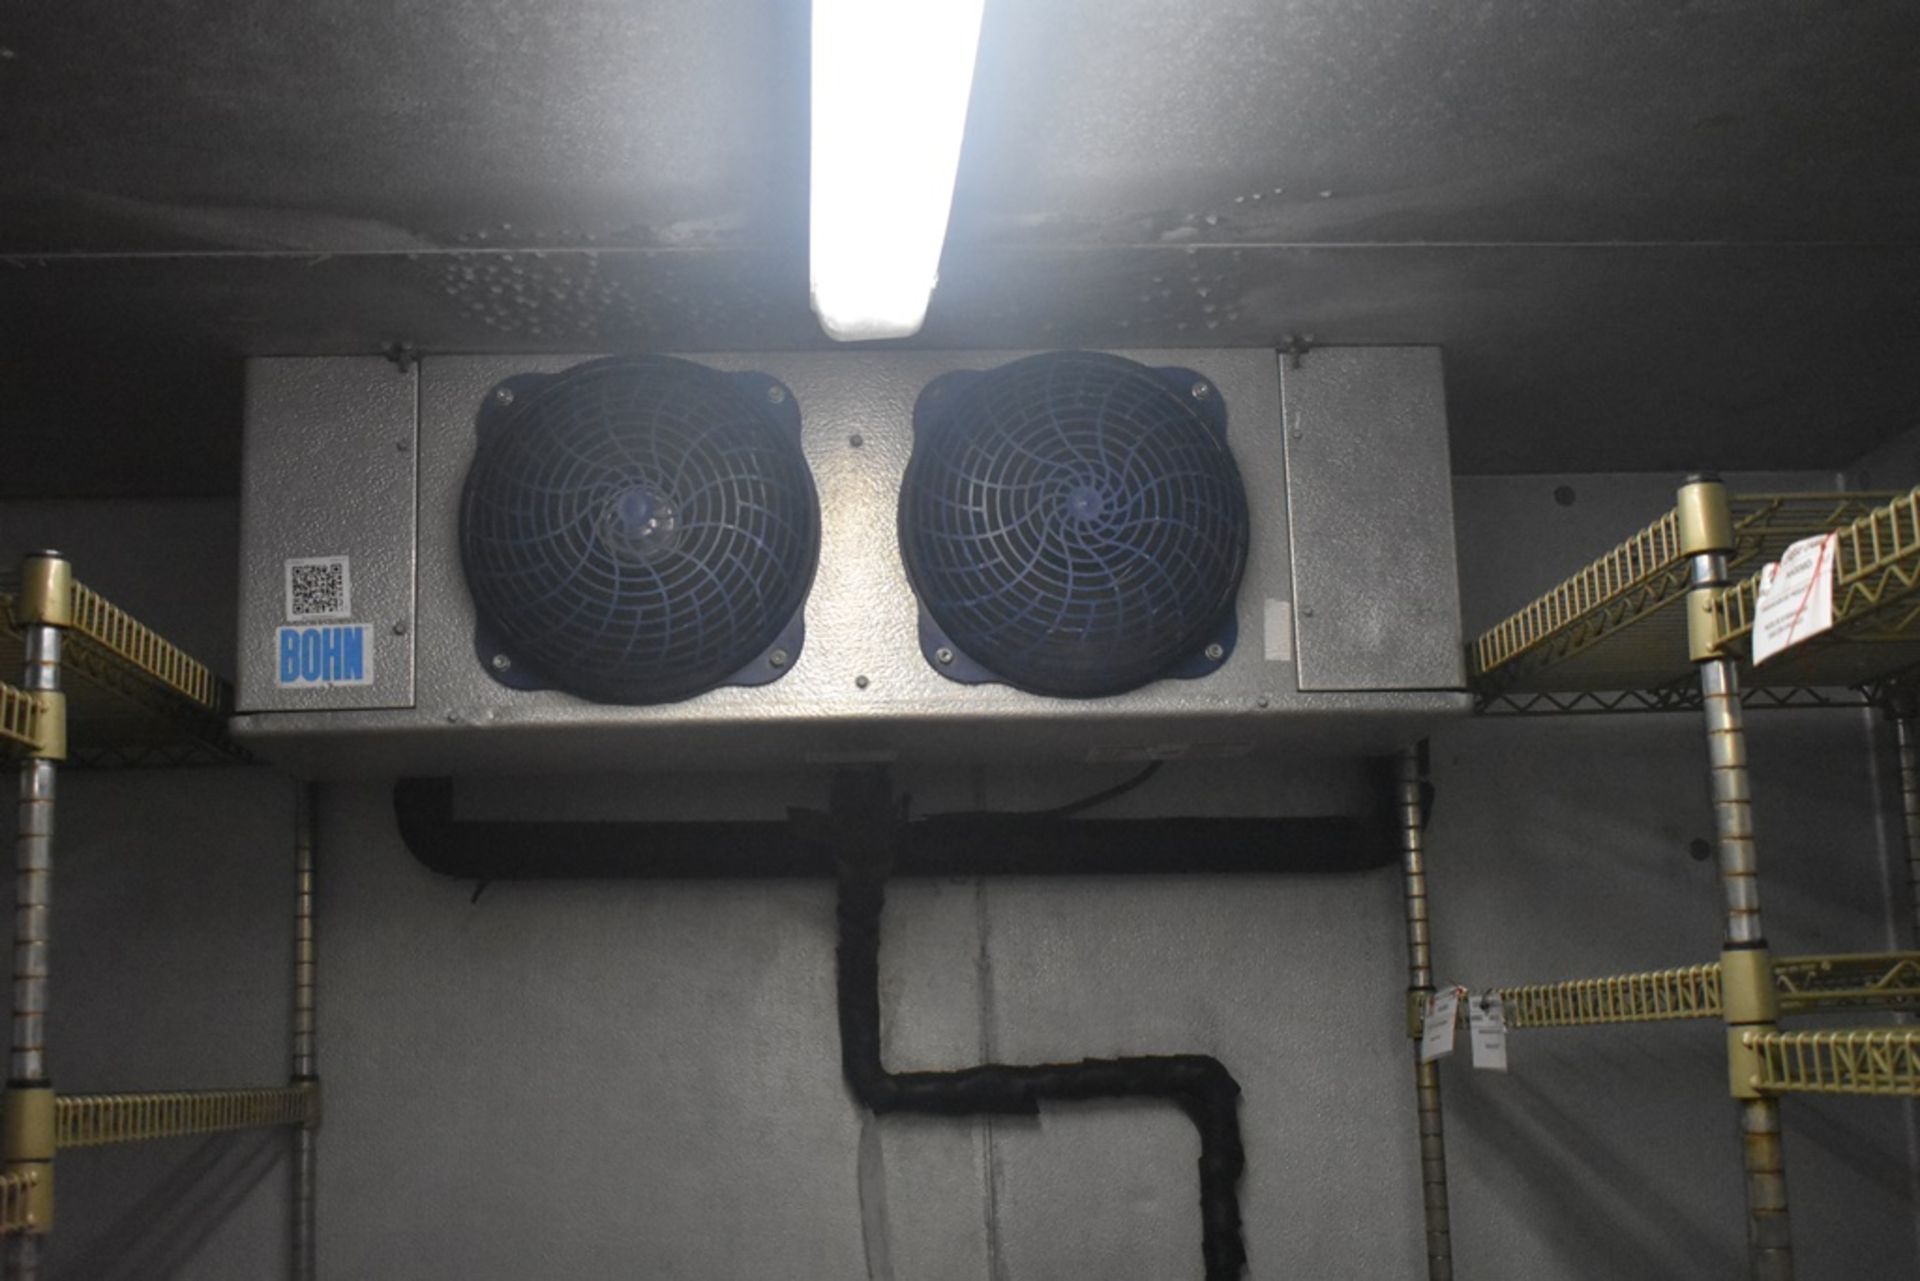 Cámara de congelación medidas 2.50 x 2.54 x 2.20 m, incluye difusor de dos ventiladores marca Bohn, - Image 18 of 31